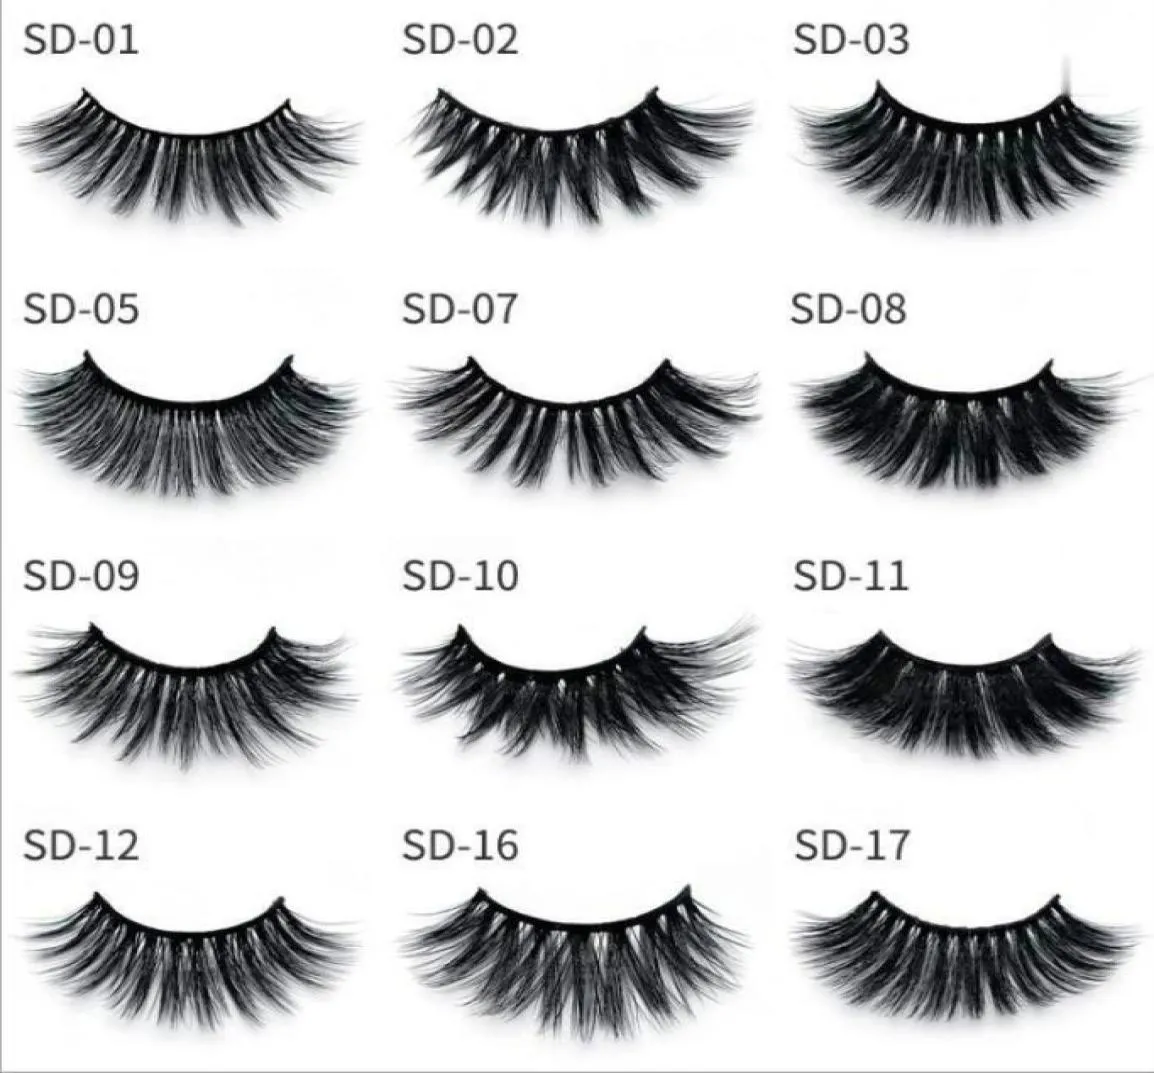 Beauty Multistyles Eyelashes Selling 20 Style False Mink Lashes Natural Long Set Faux Cils Bulk Makeup Whole Lashes3290259